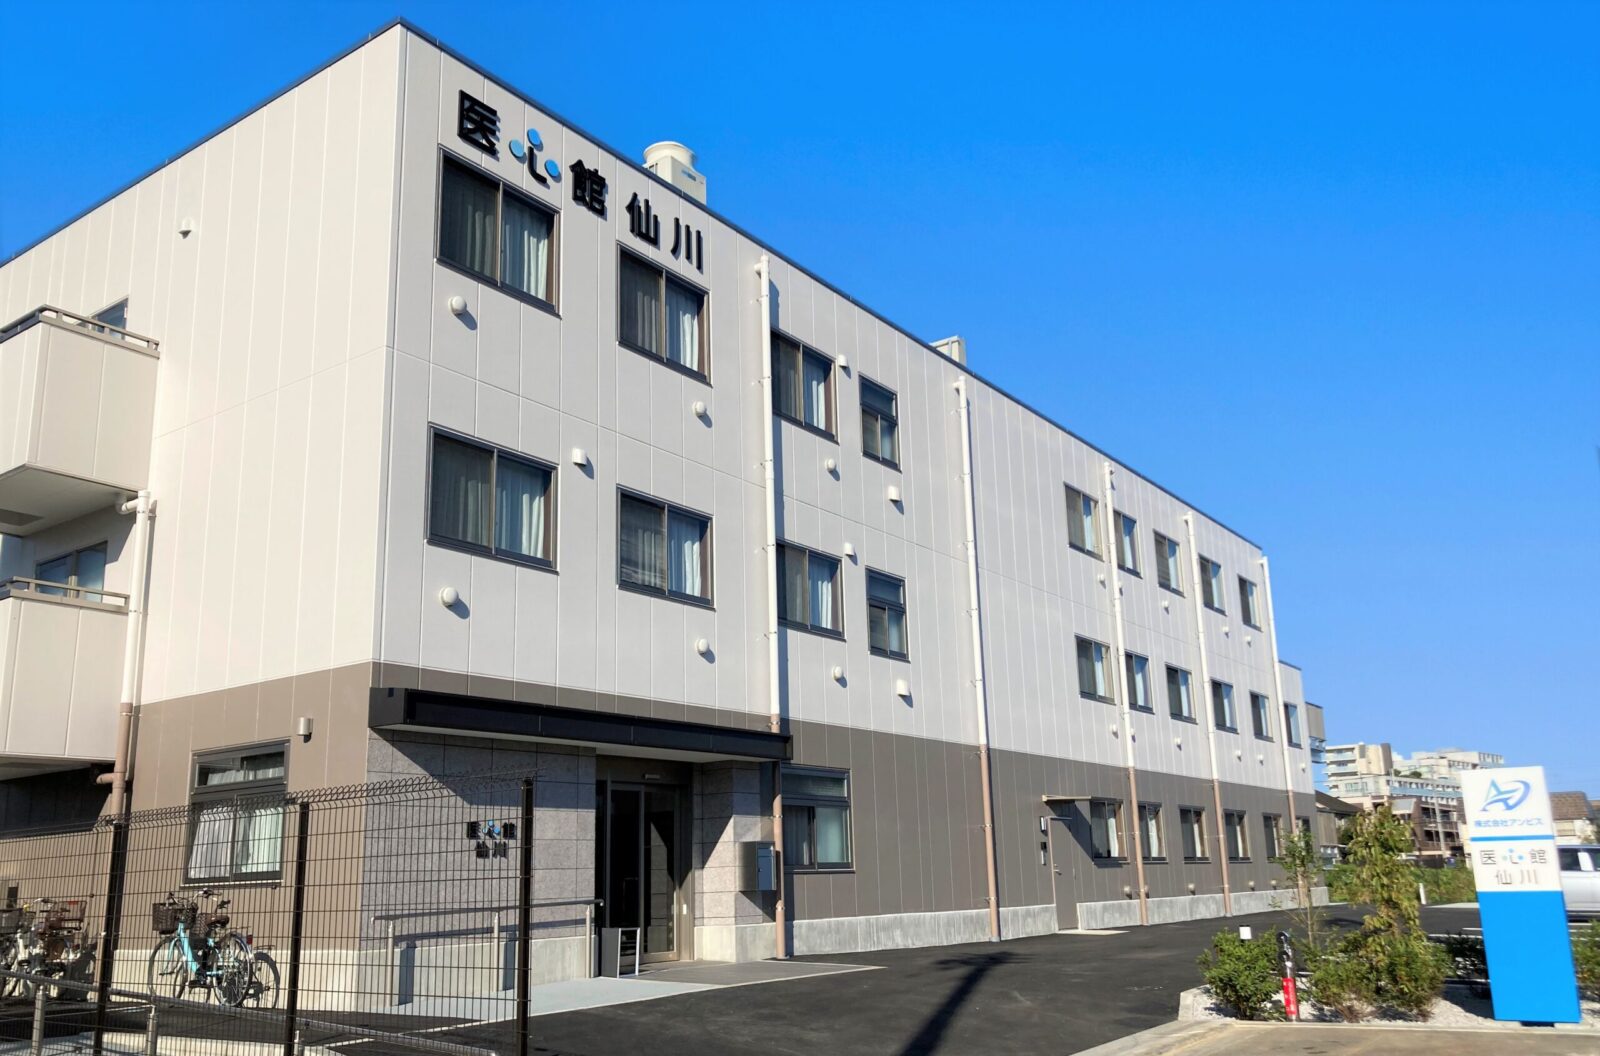 東京都では６施設目となる有料老人ホーム「医心館 仙川」をオープンしました